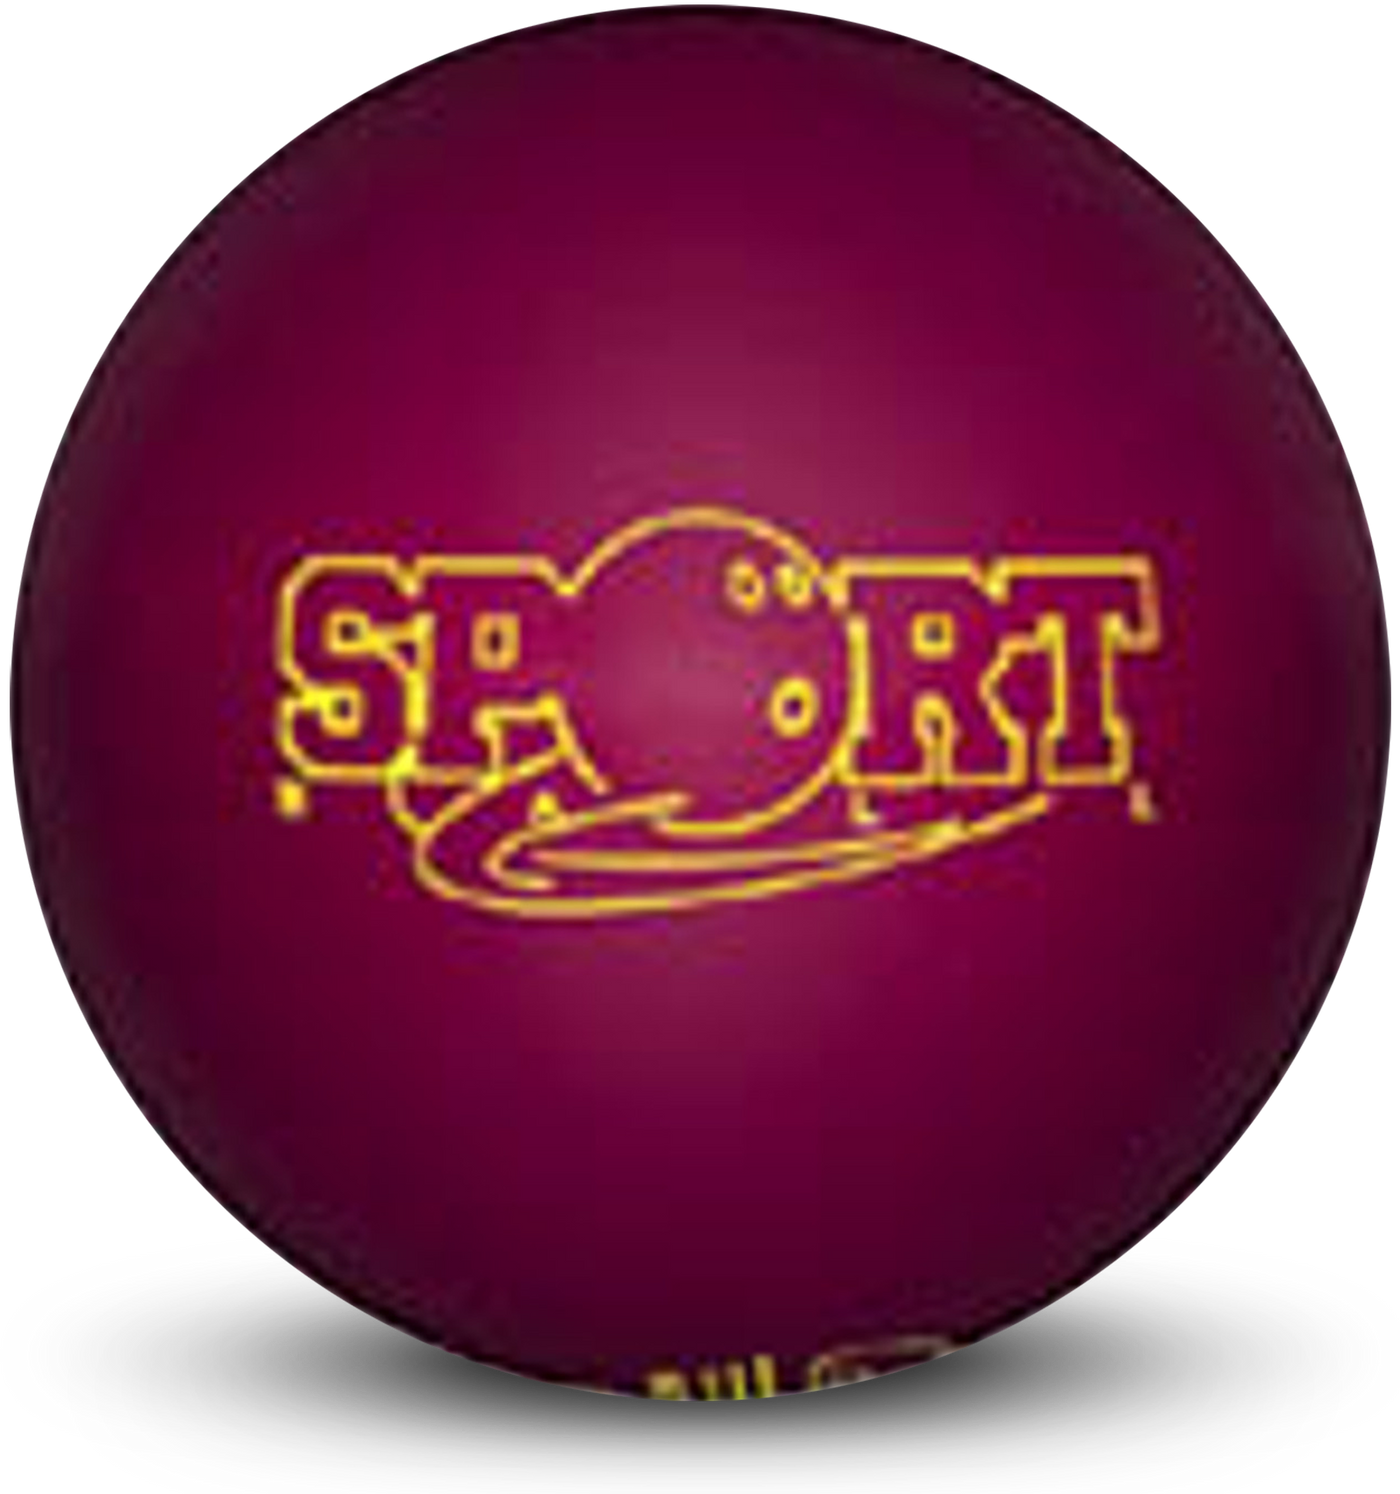 Sport Ball Bowling Ball